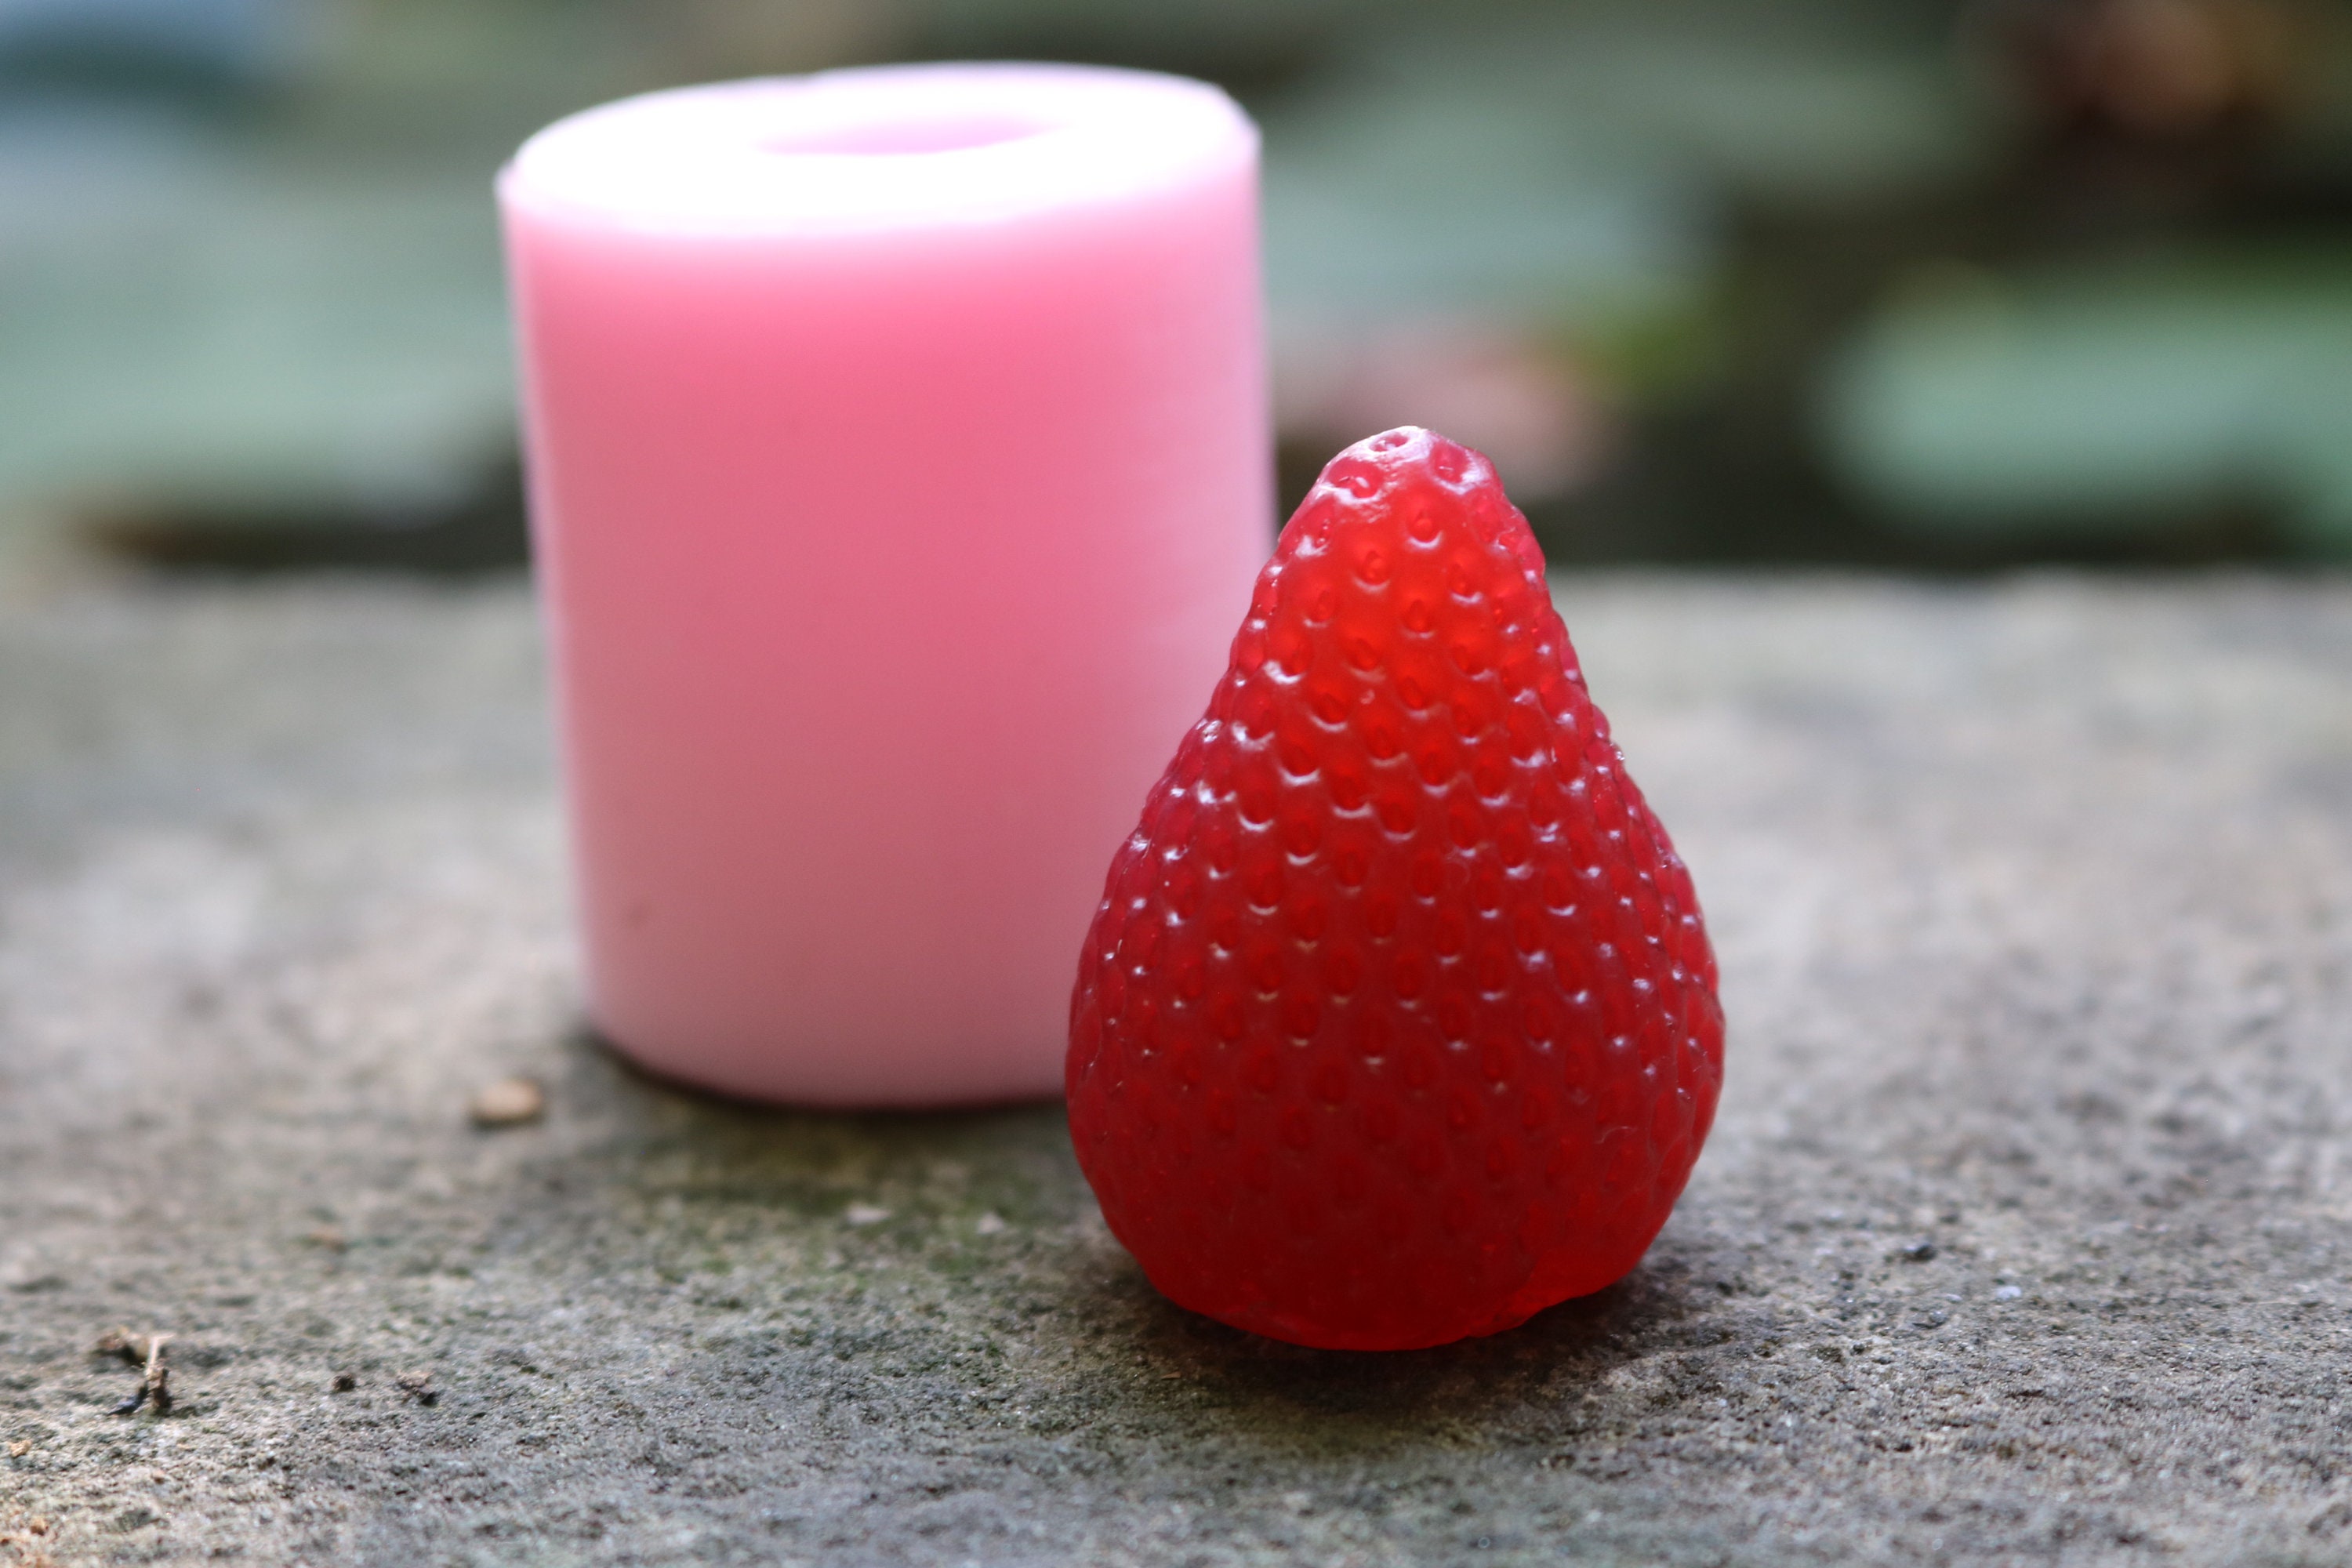 Mini Strawberries - Silicone Mold